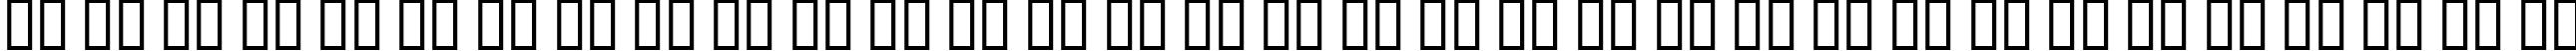 Пример написания русского алфавита шрифтом AnglicanText